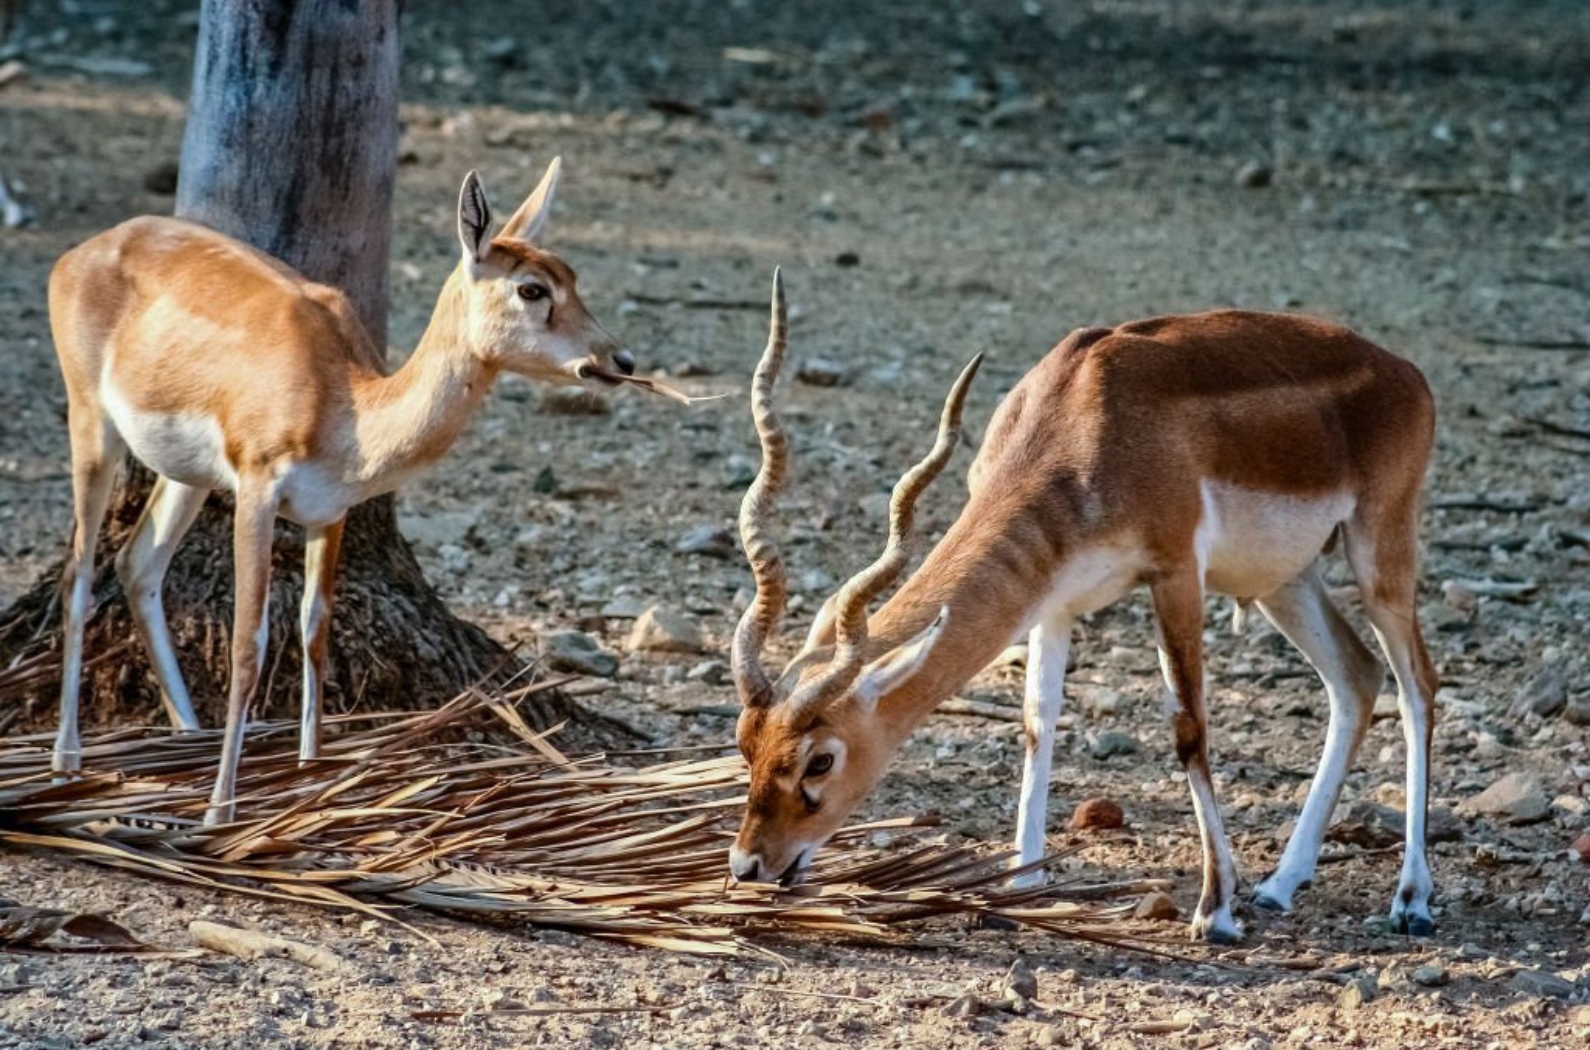 Blackbuck Antelopes in the zoo in Mysore, India.